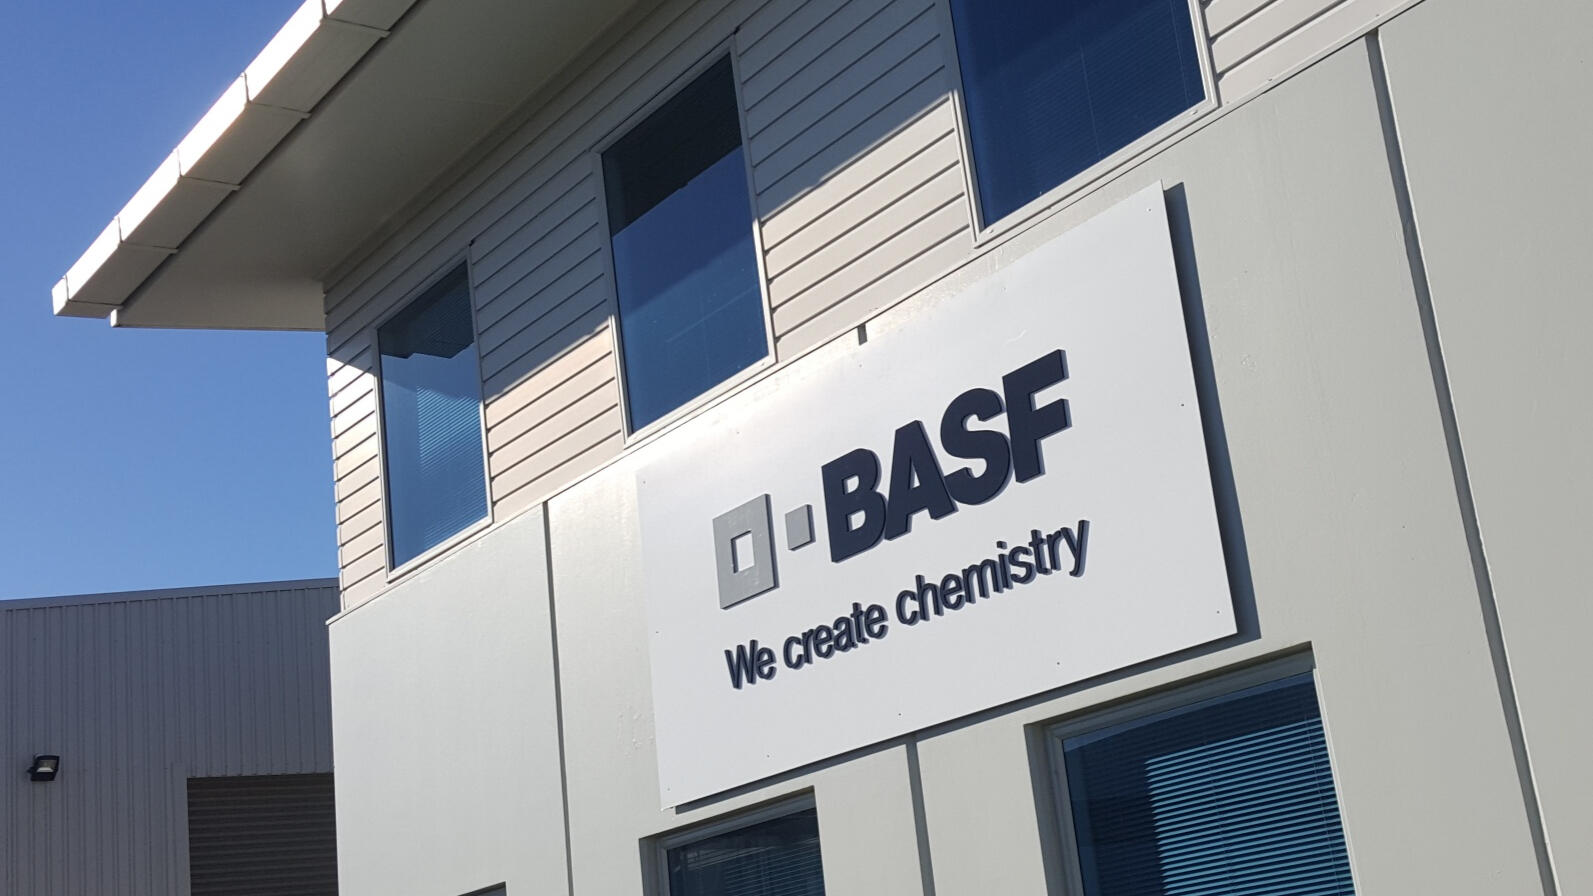 BASF Factory signage